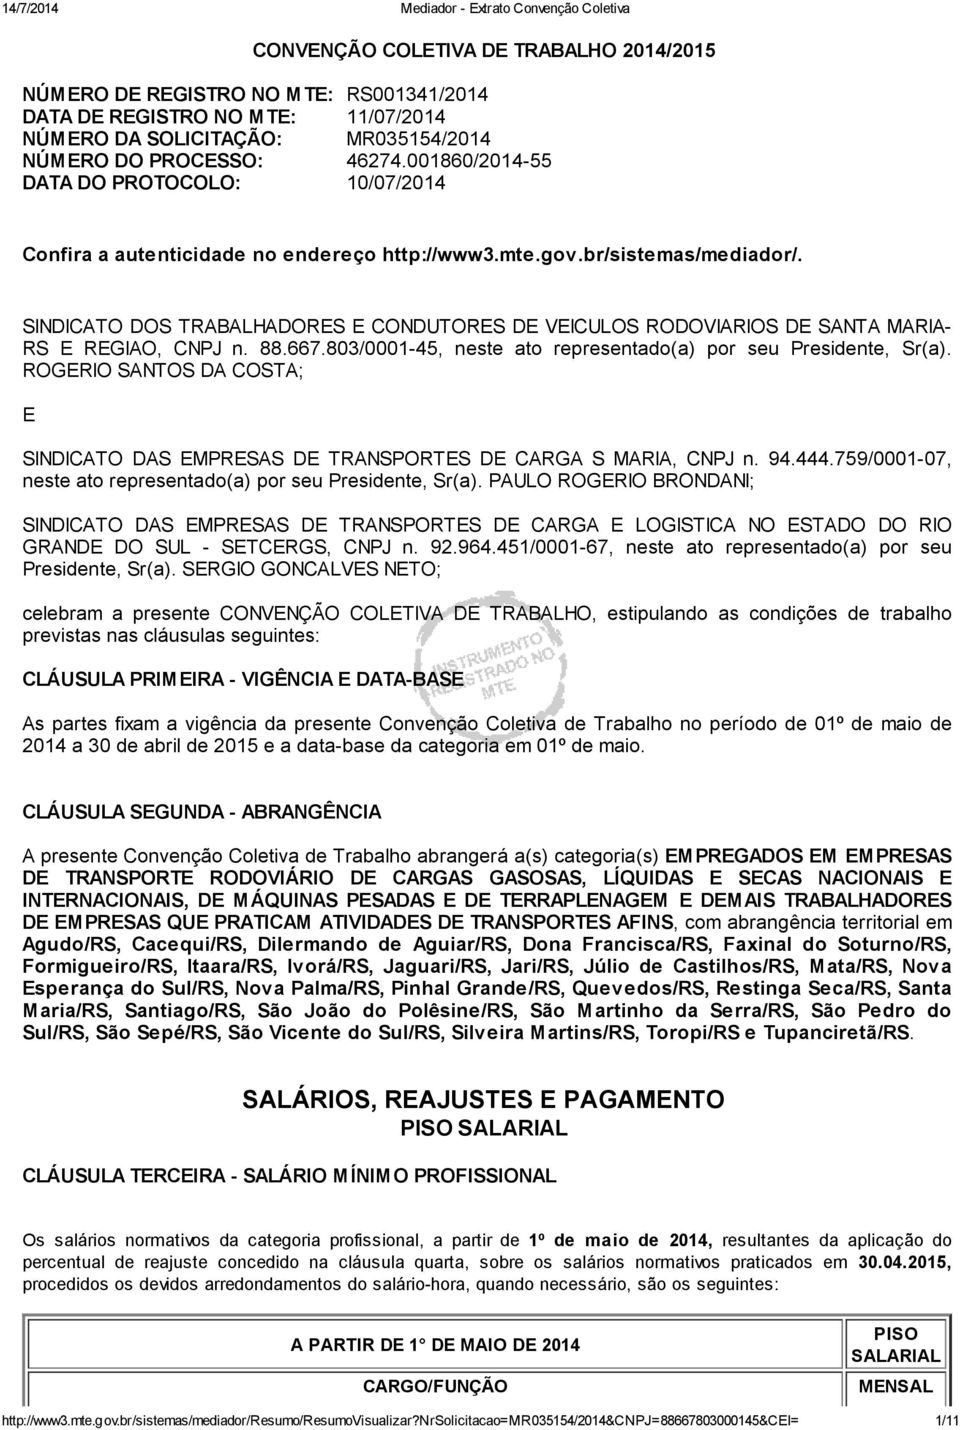 SINDICATO DOS TRABALHADORES E CONDUTORES DE VEICULOS RODOVIARIOS DE SANTA MARIA- RS E REGIAO, CNPJ n. 88.667.803/0001-45, neste ato representado(a) por seu Presidente, Sr(a).